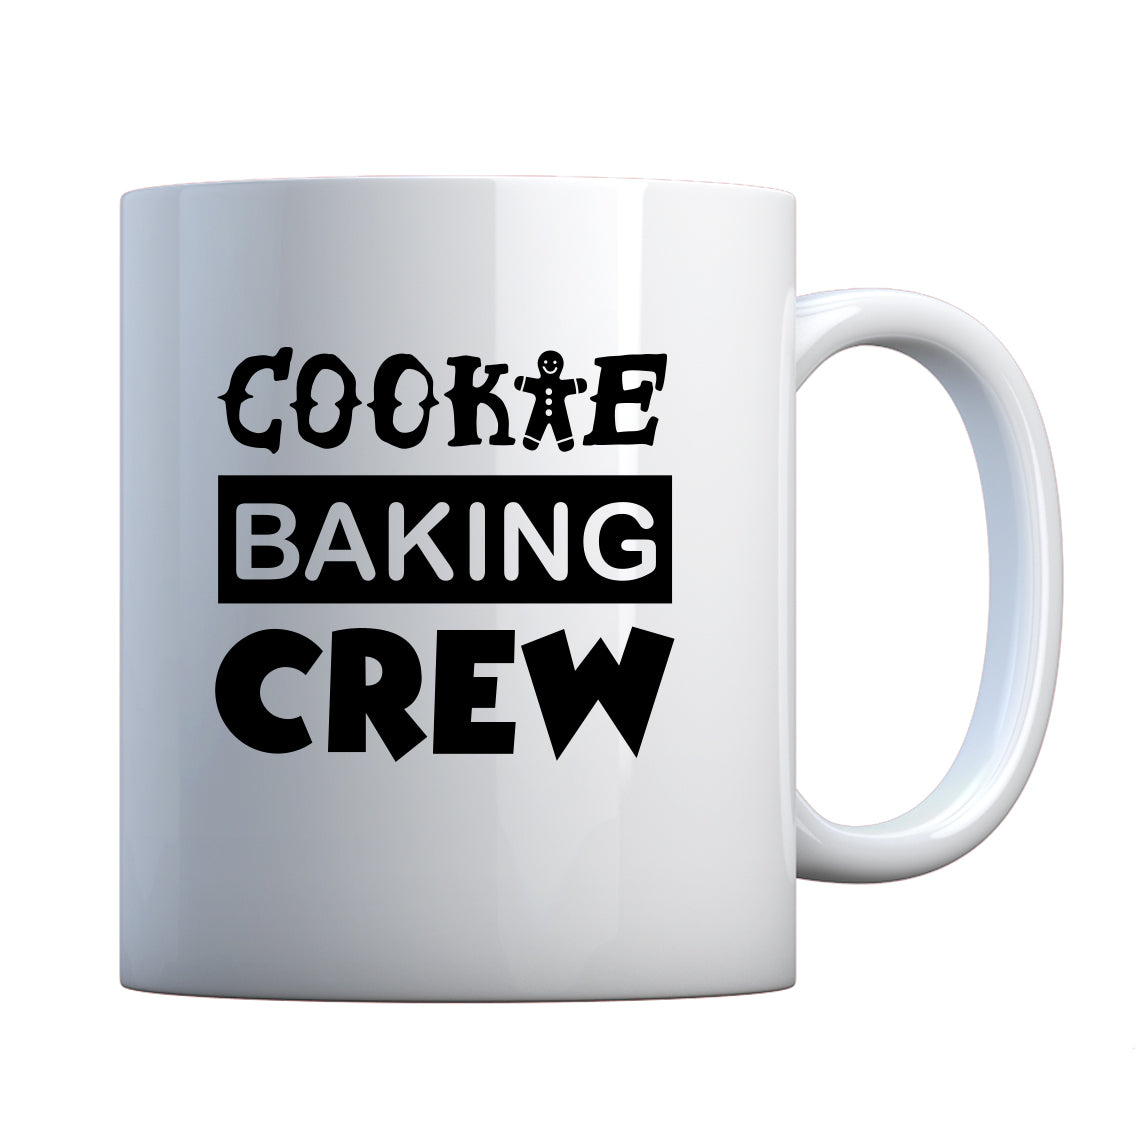 Cookie Baking Crew Ceramic Gift Mug